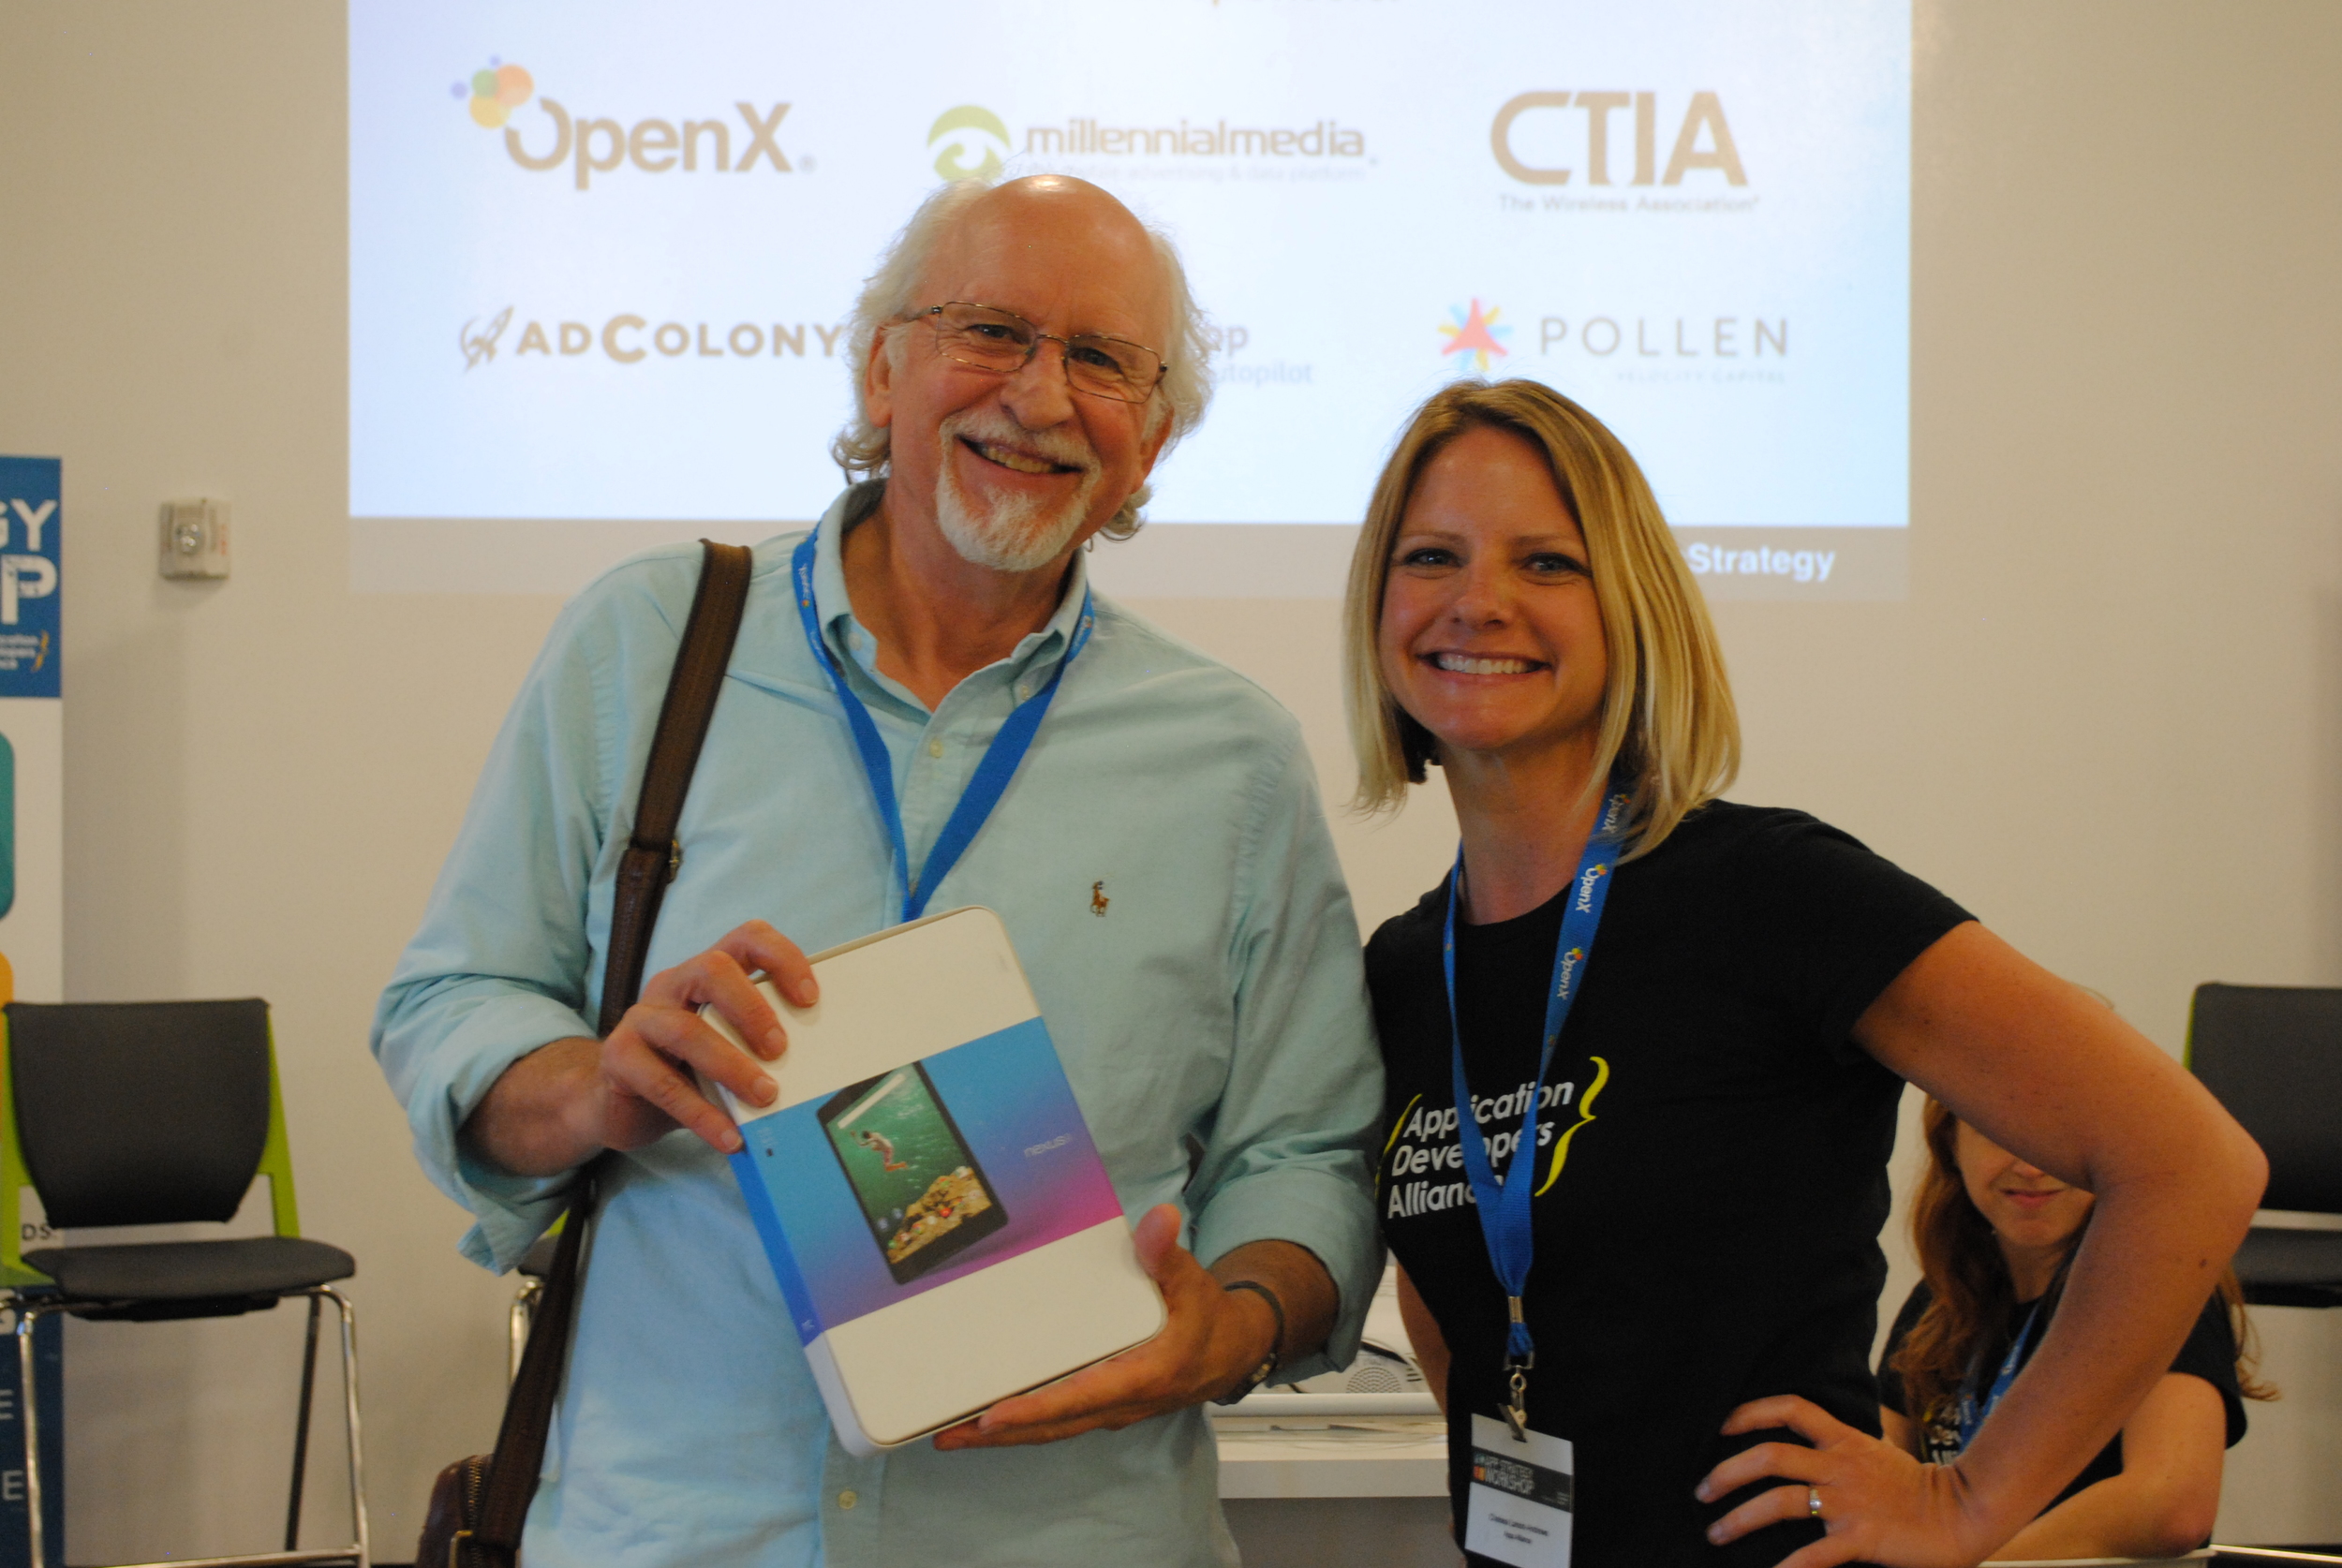 Nexus 9 Tablet contest winner, Peter Tierney.